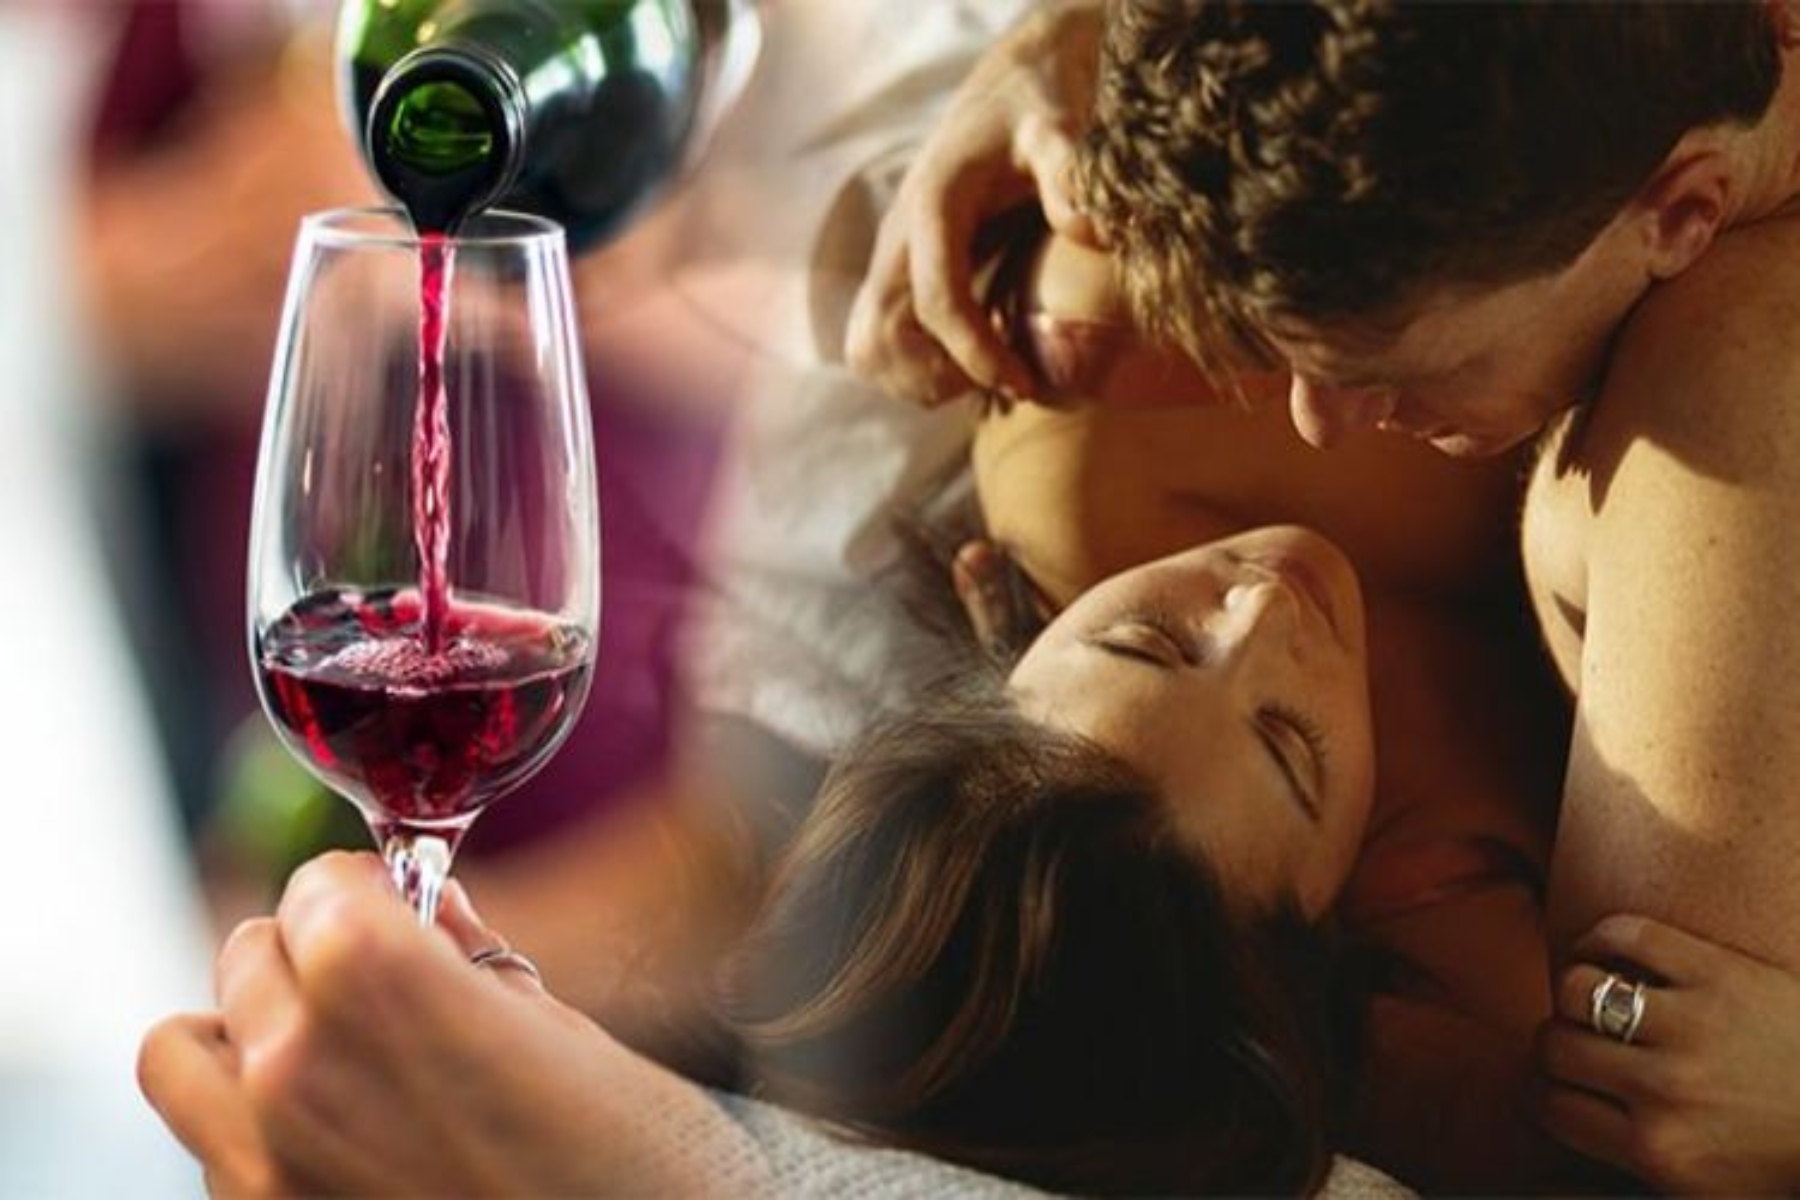 Κόκκινο κρασί σεξ: Ποιο είναι το καλύτερο αλκοόλ για υπέροχο σεξ;